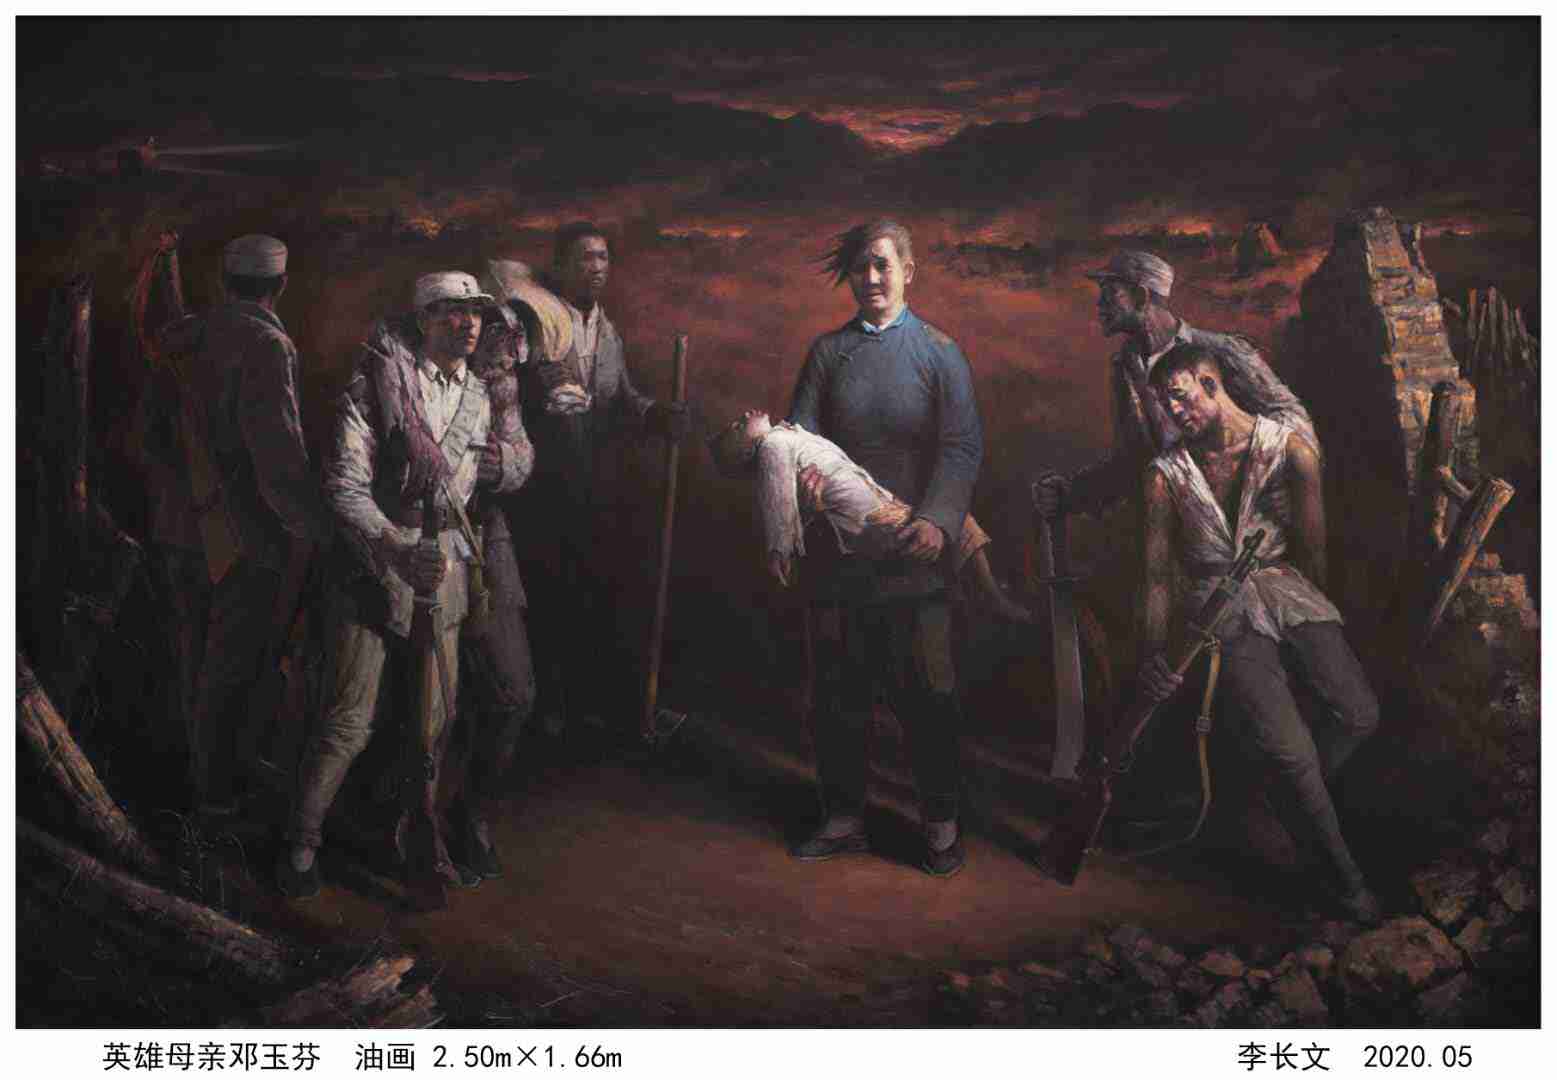 抗战题材油画《英雄母亲邓玉芬》亮相北京